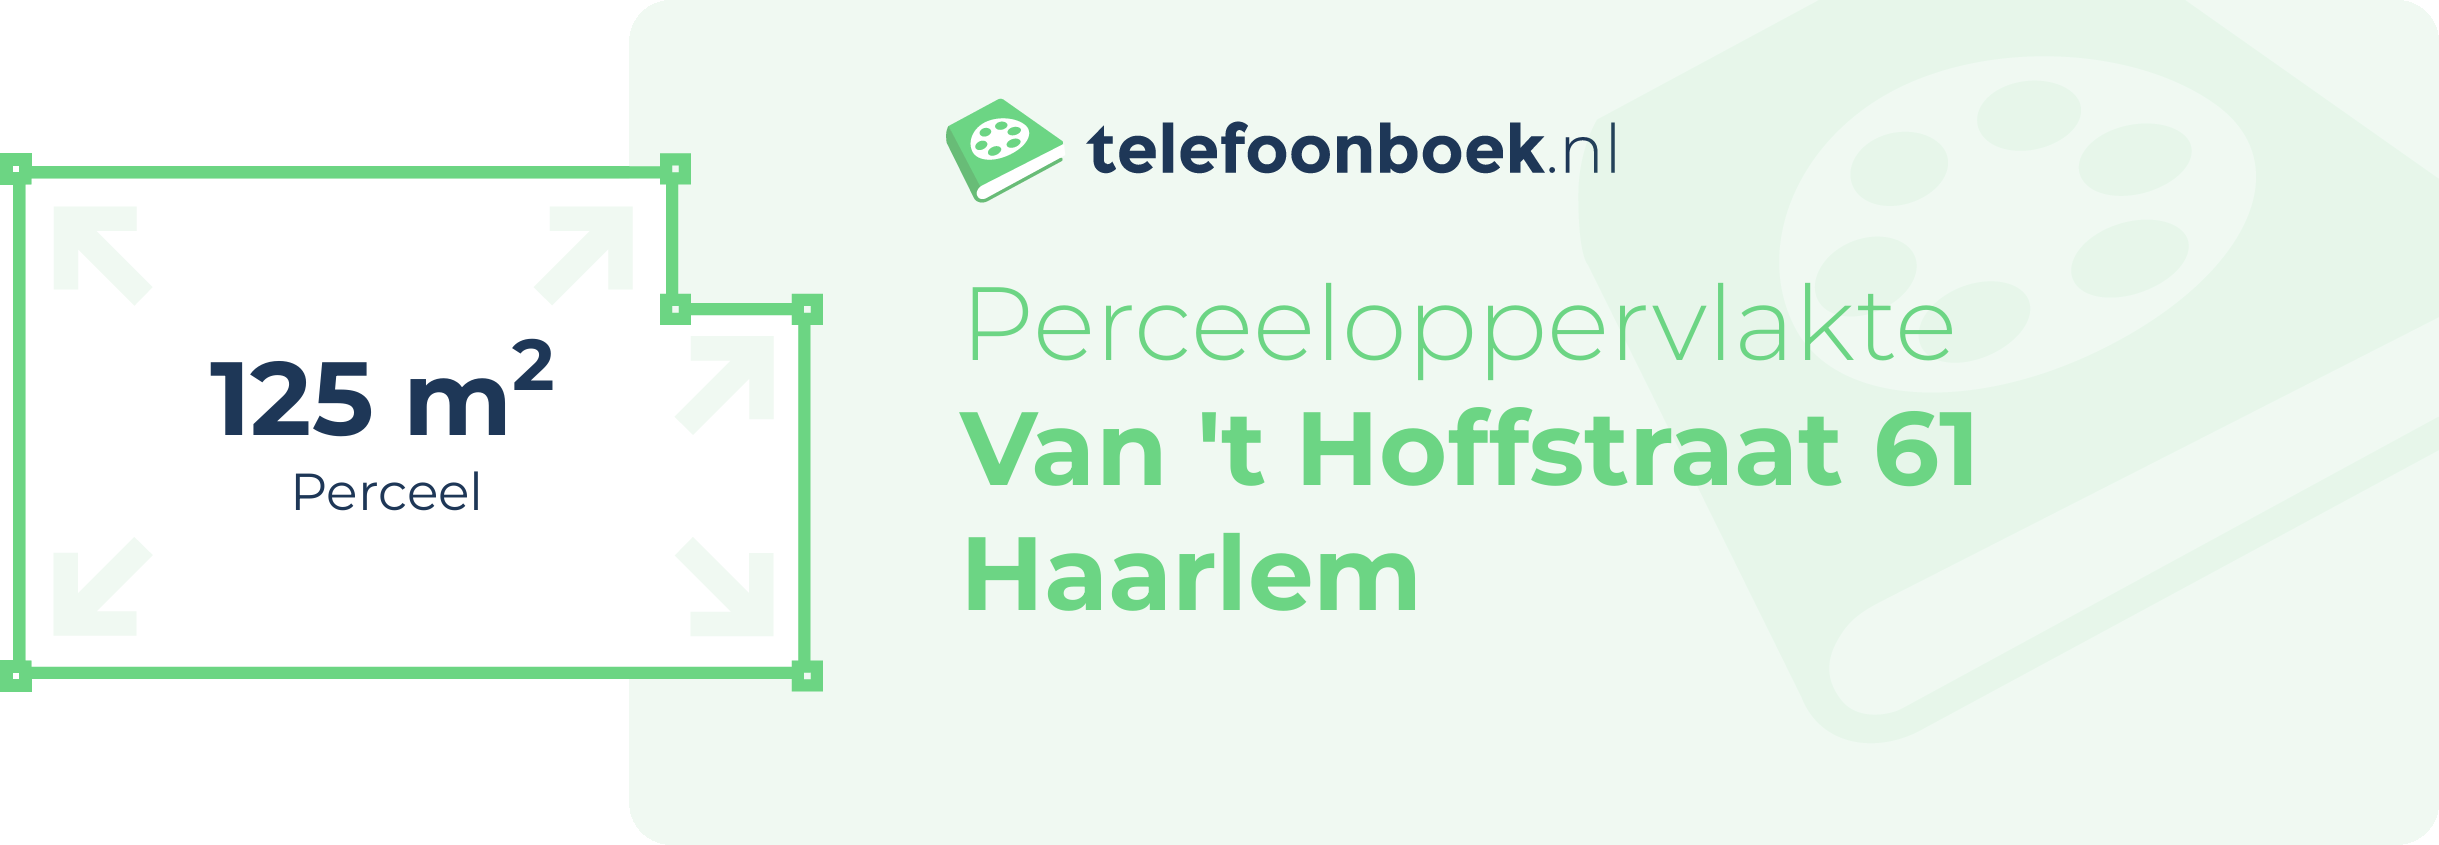 Perceeloppervlakte Van 't Hoffstraat 61 Haarlem